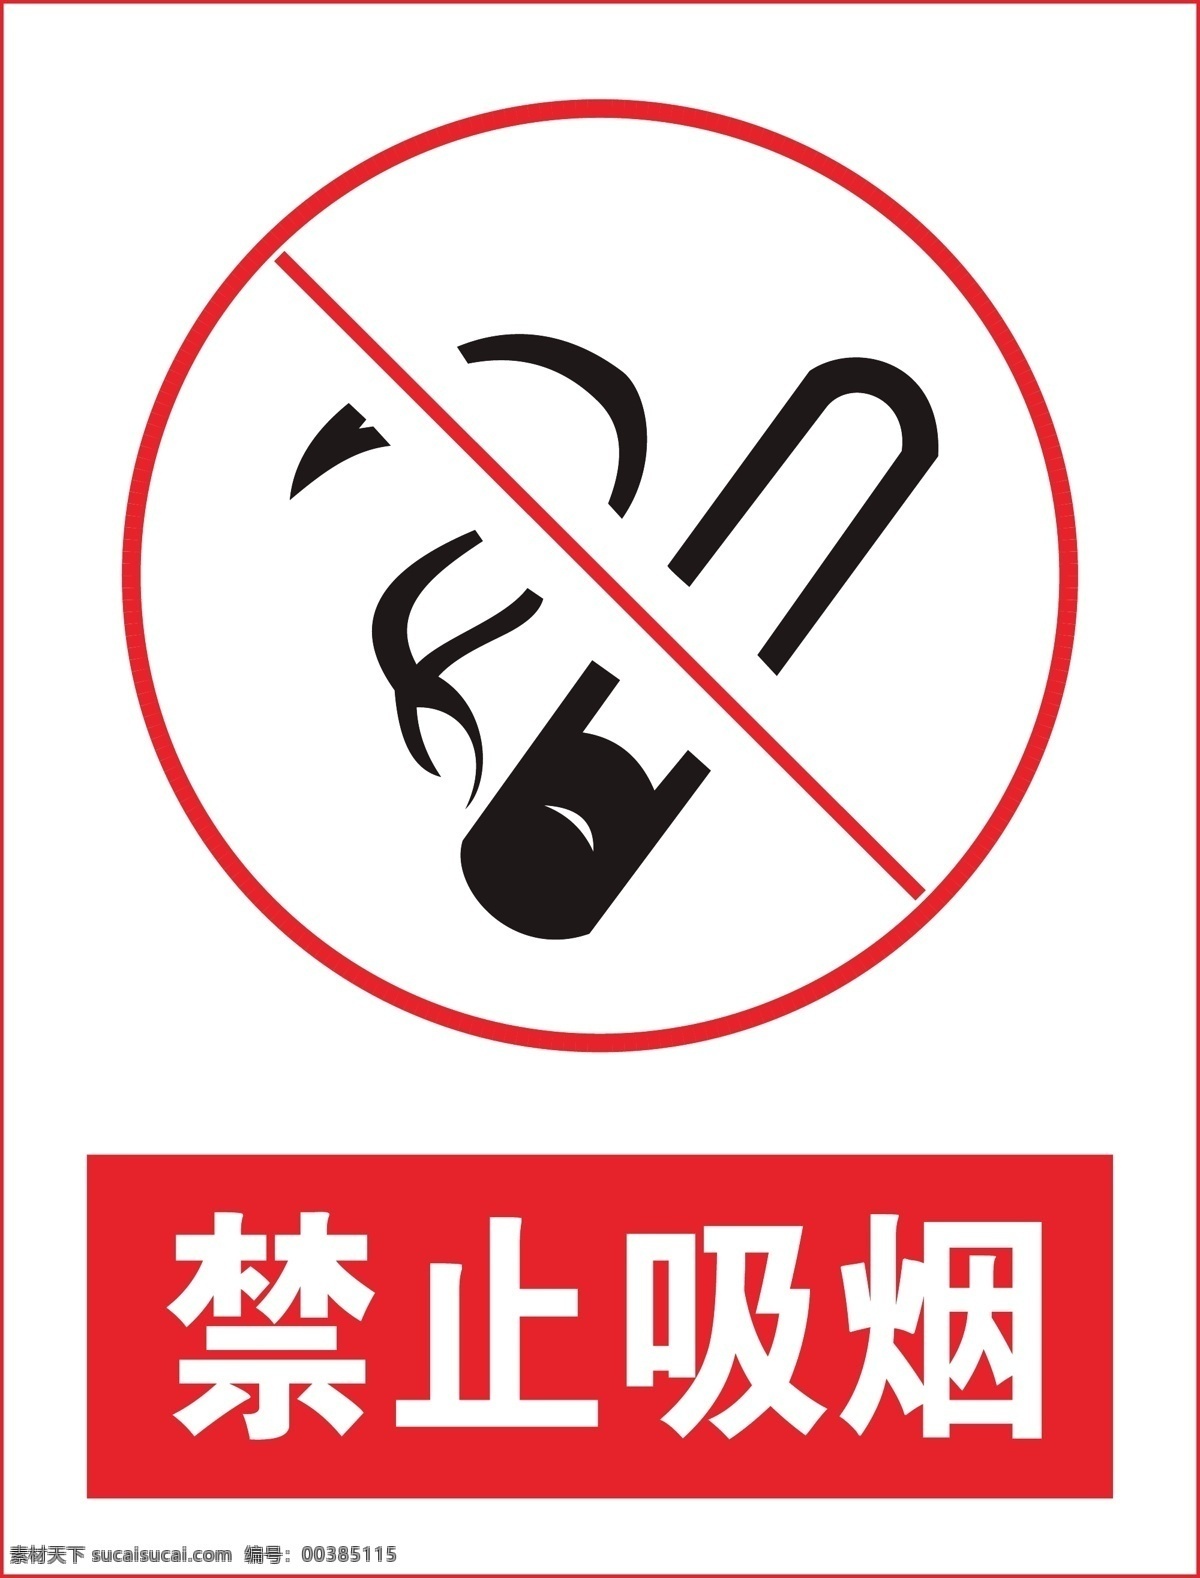 禁止吸烟标志 禁止吸烟样式 禁止吸烟模版 禁止吸烟牌 温馨提示标牌